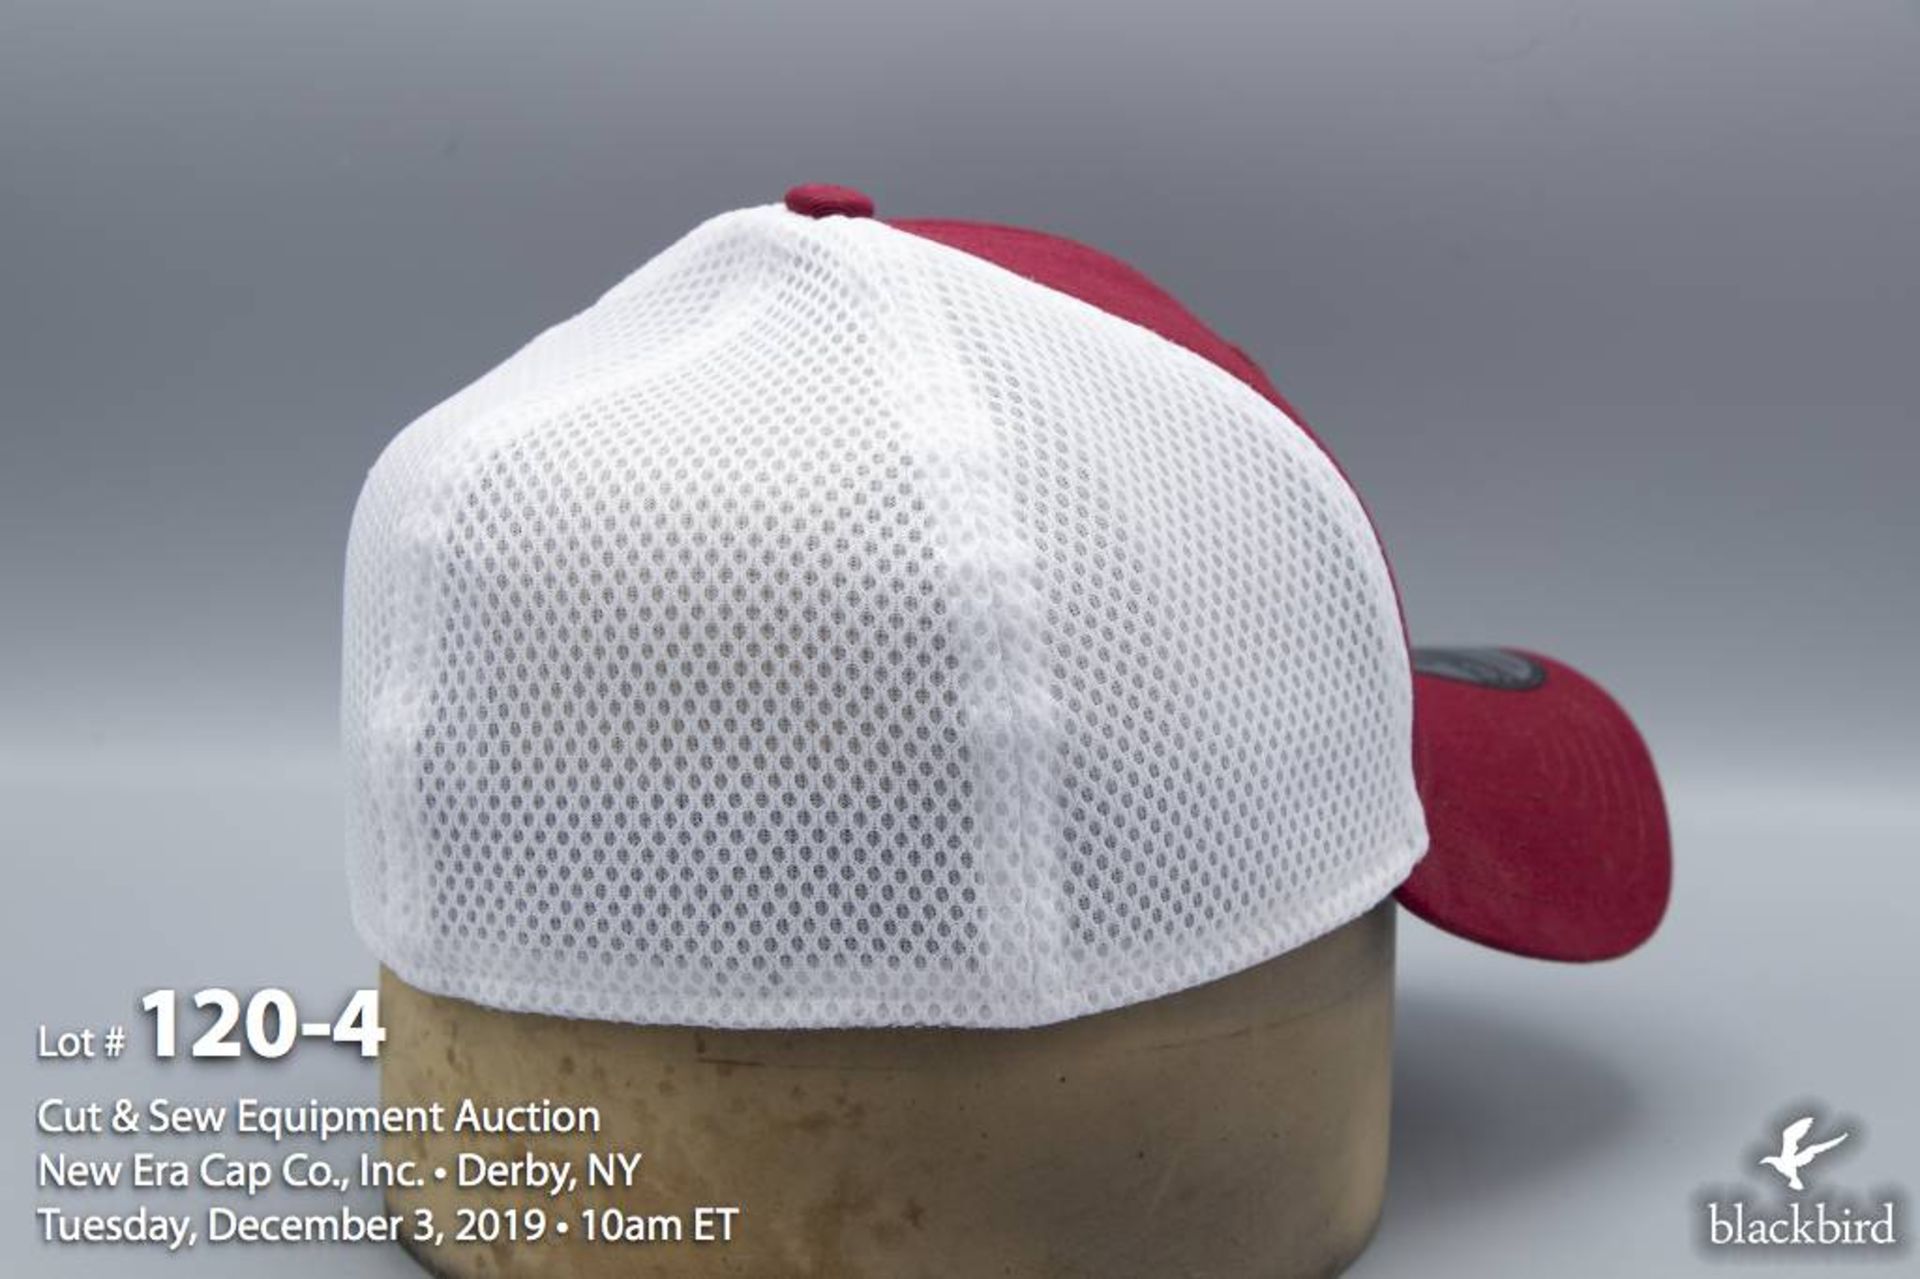 (72) New Era 39THIRTY Hat Semester Cardinal / White (Medium / Large) - Image 4 of 4